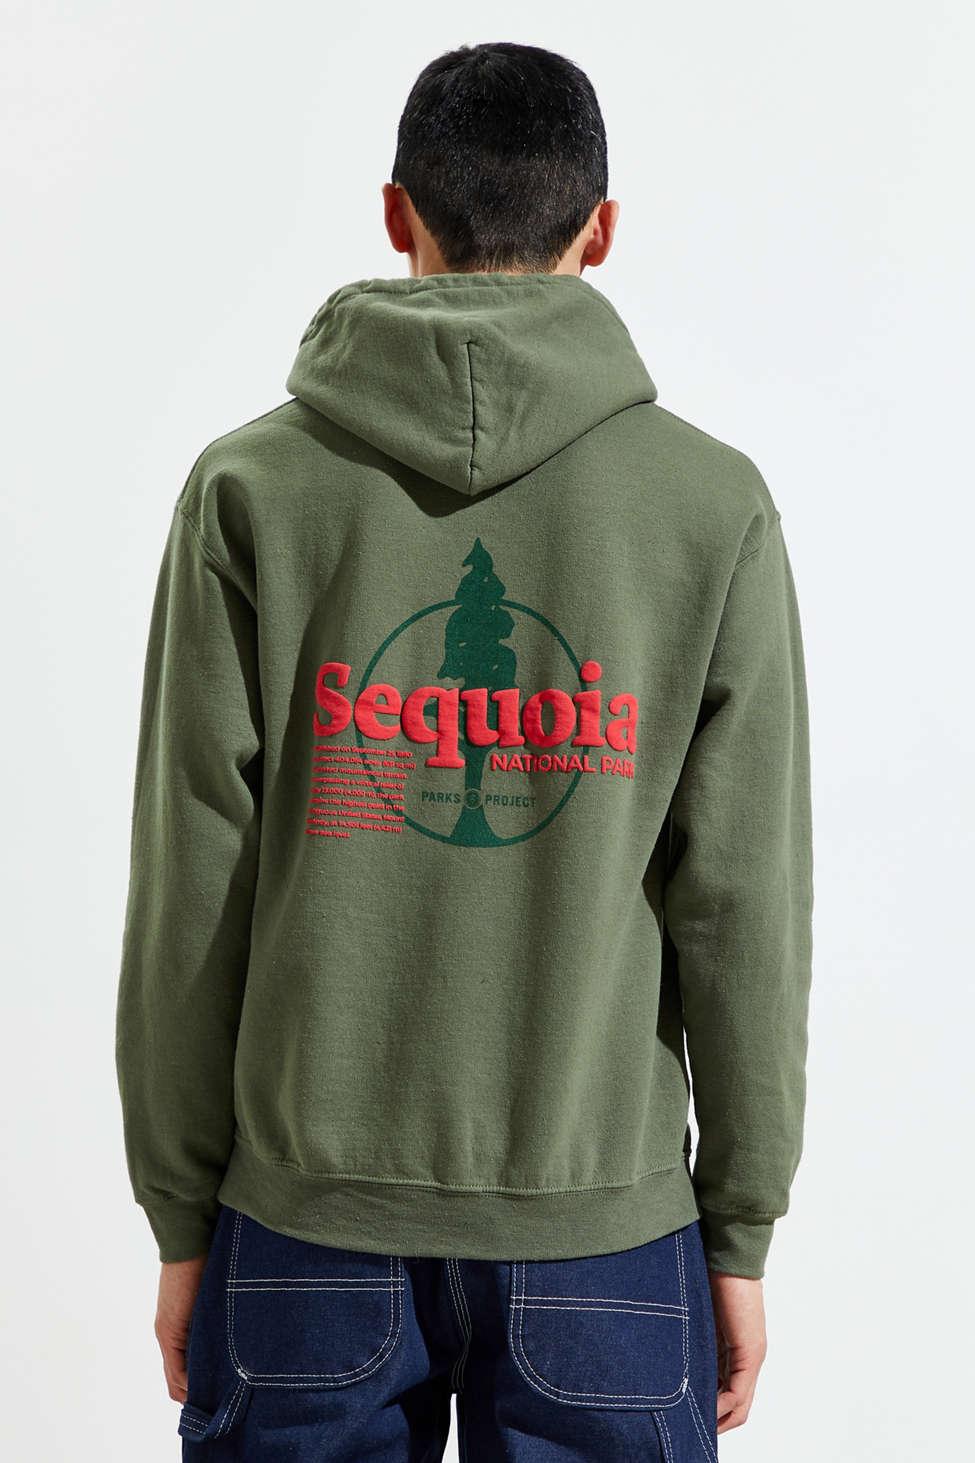 Sequoia National Park Mans Black Hoodies Hooded Sweatshirts Soft Hoodies for Men